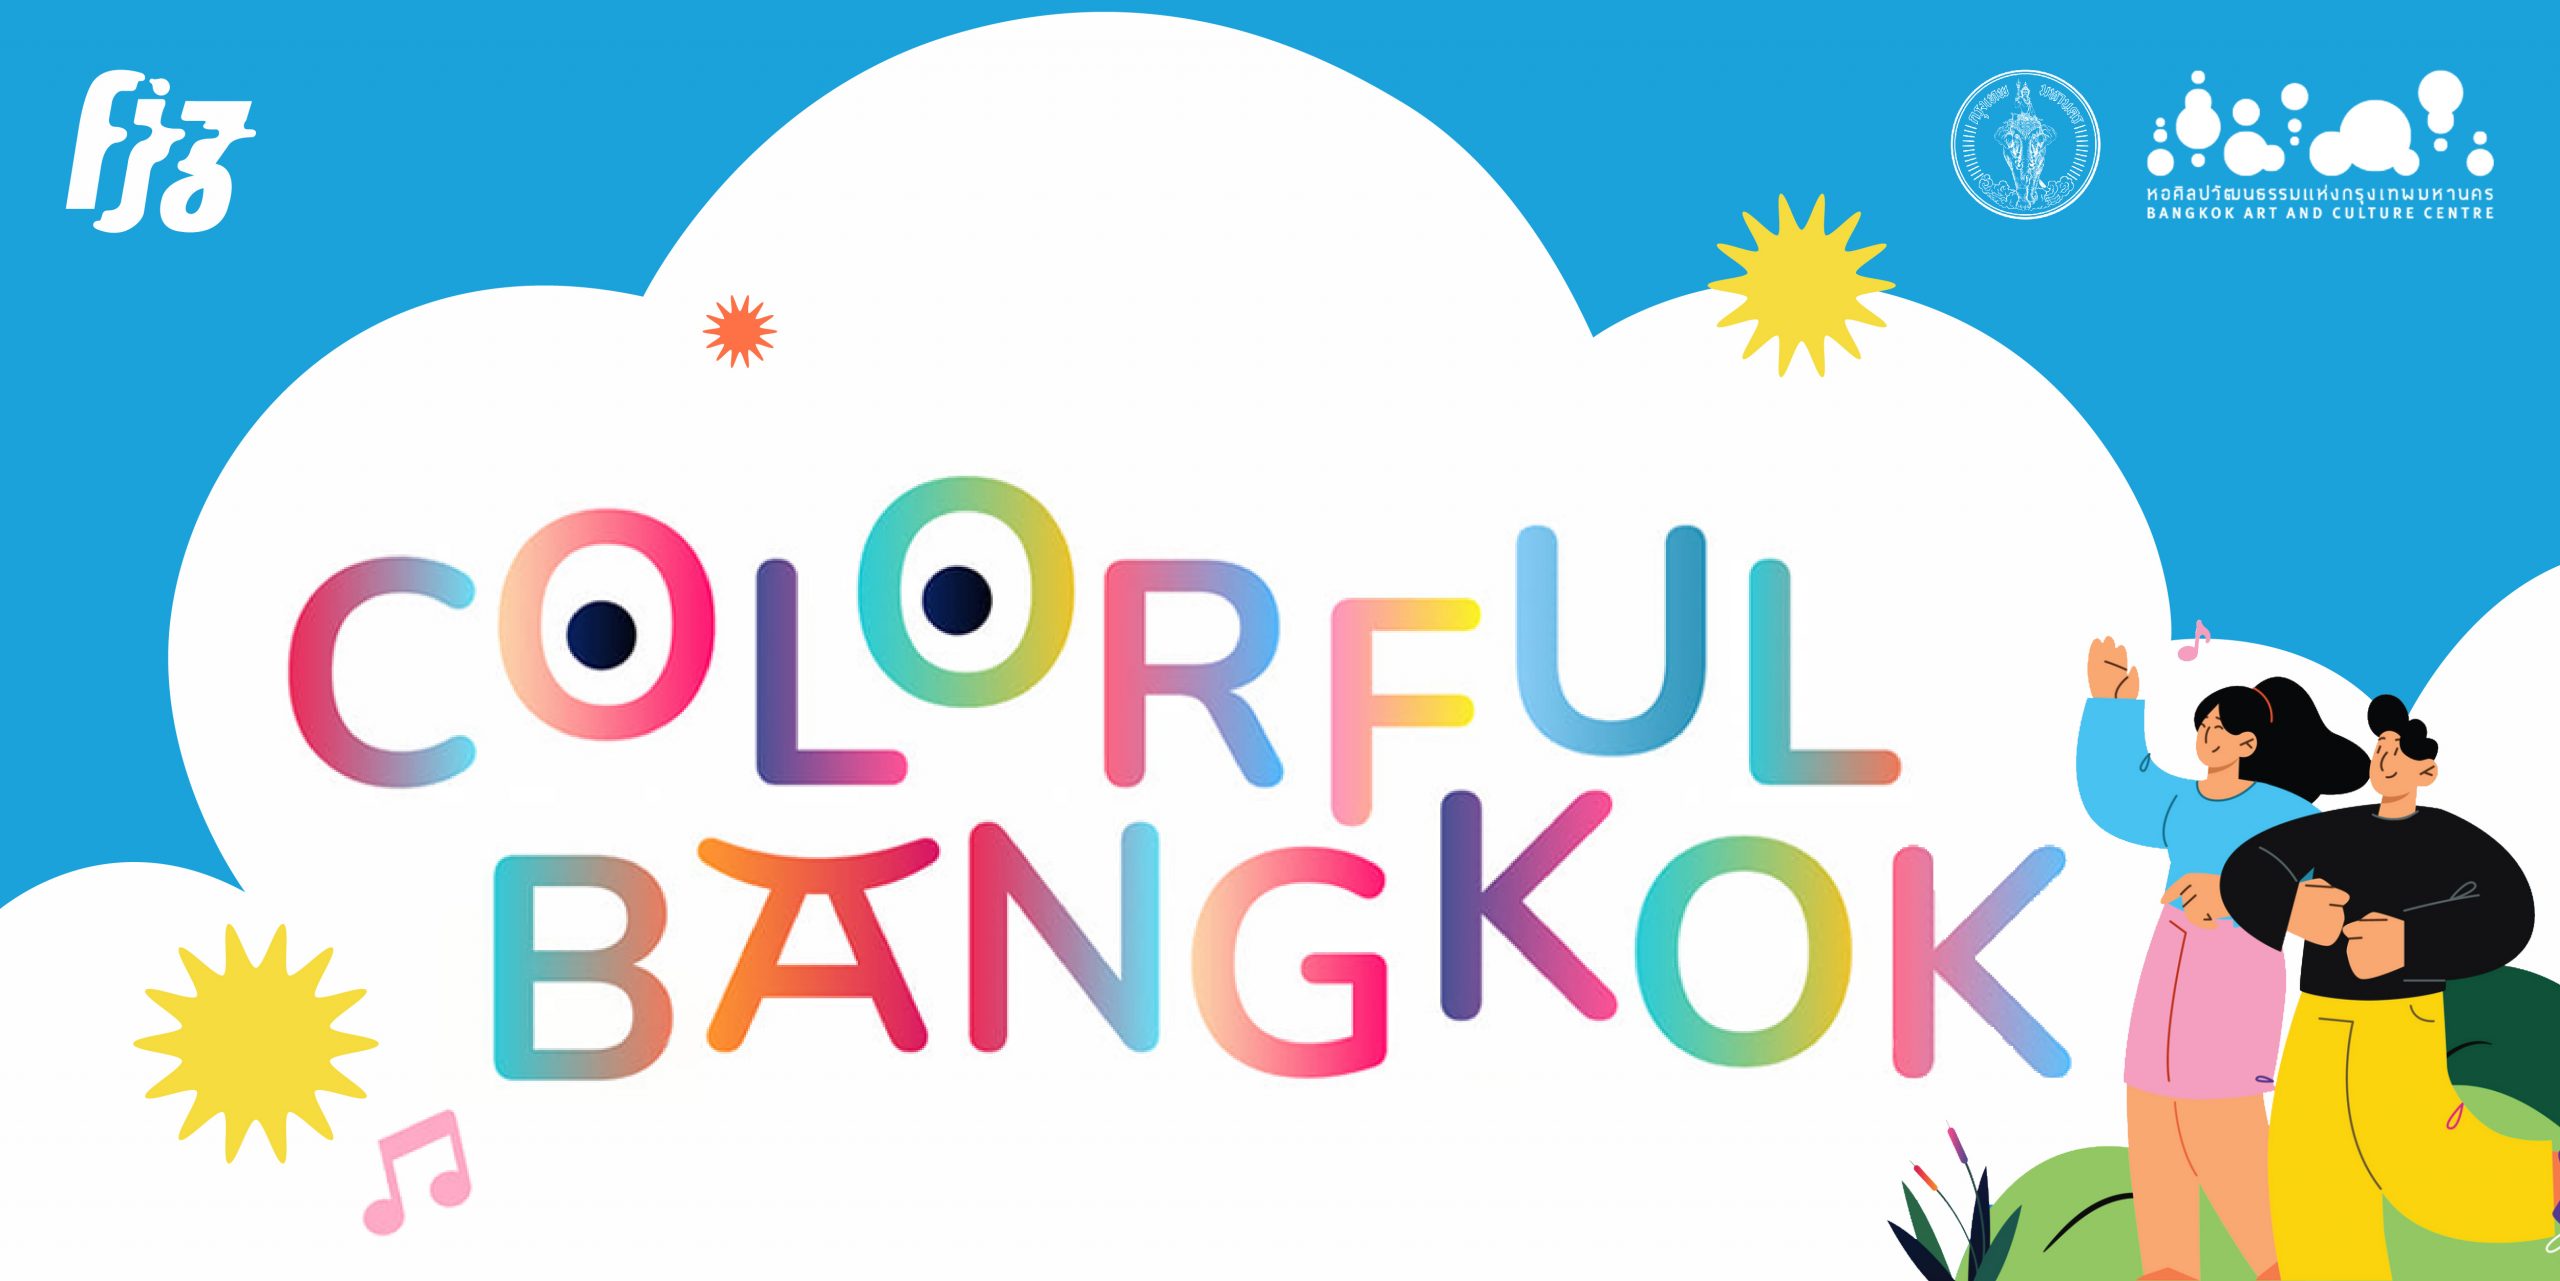 ‘Colourful Bangkok’ ต่อจากนี้ศิลปะ แสงสี ดนตรีจะมีทั่วกรุงเทพฯ!